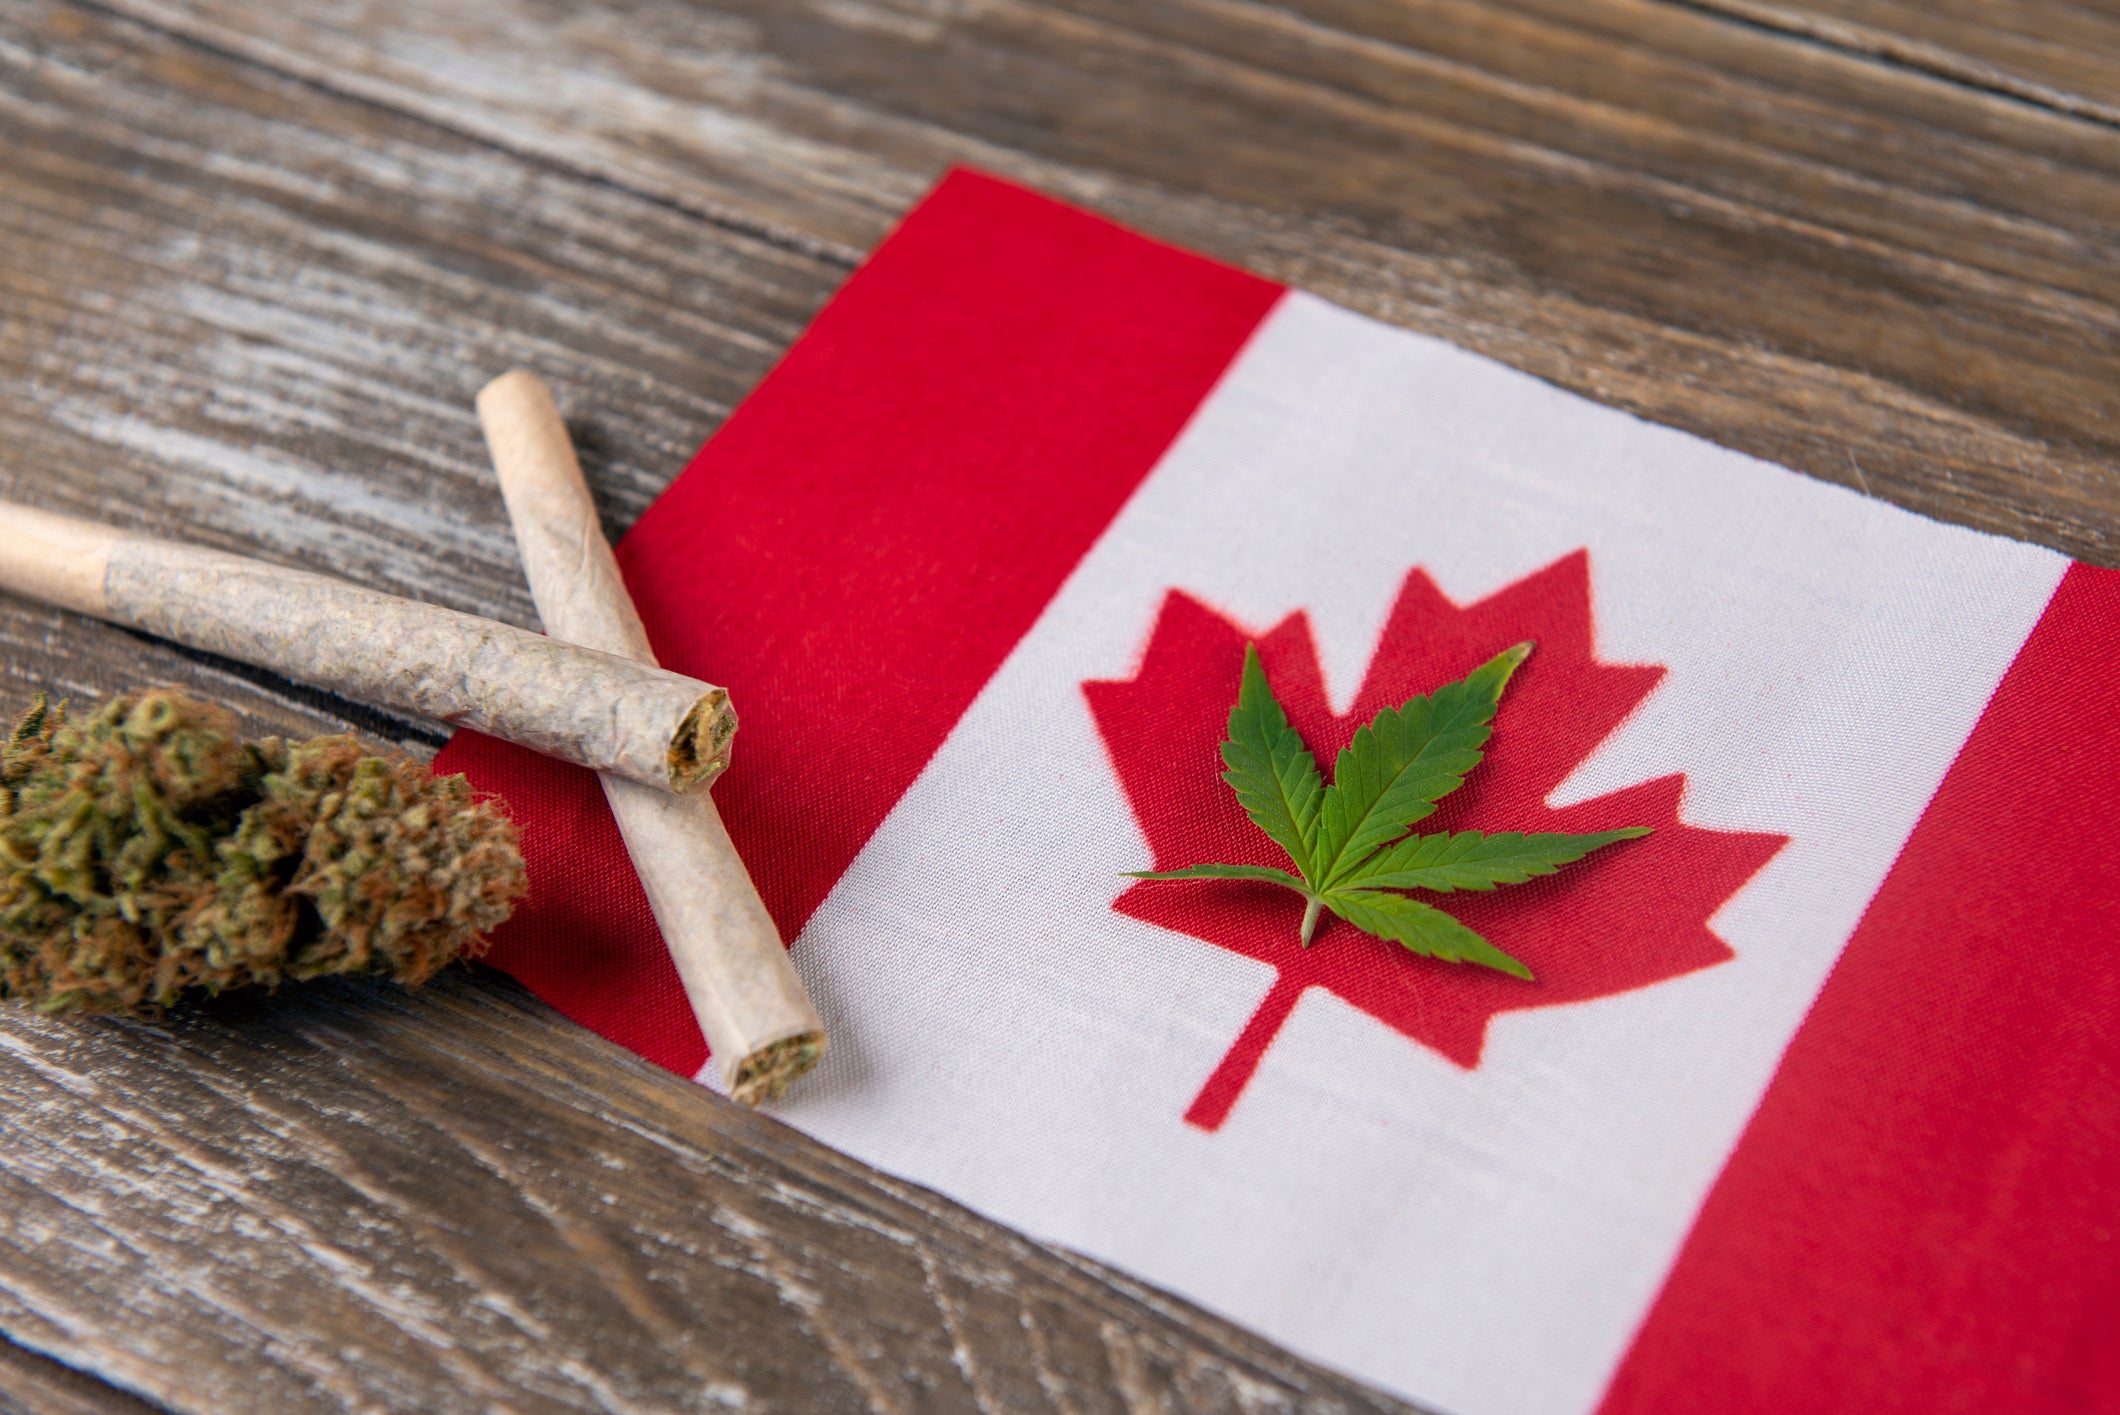 Legal Cannabis in Canada